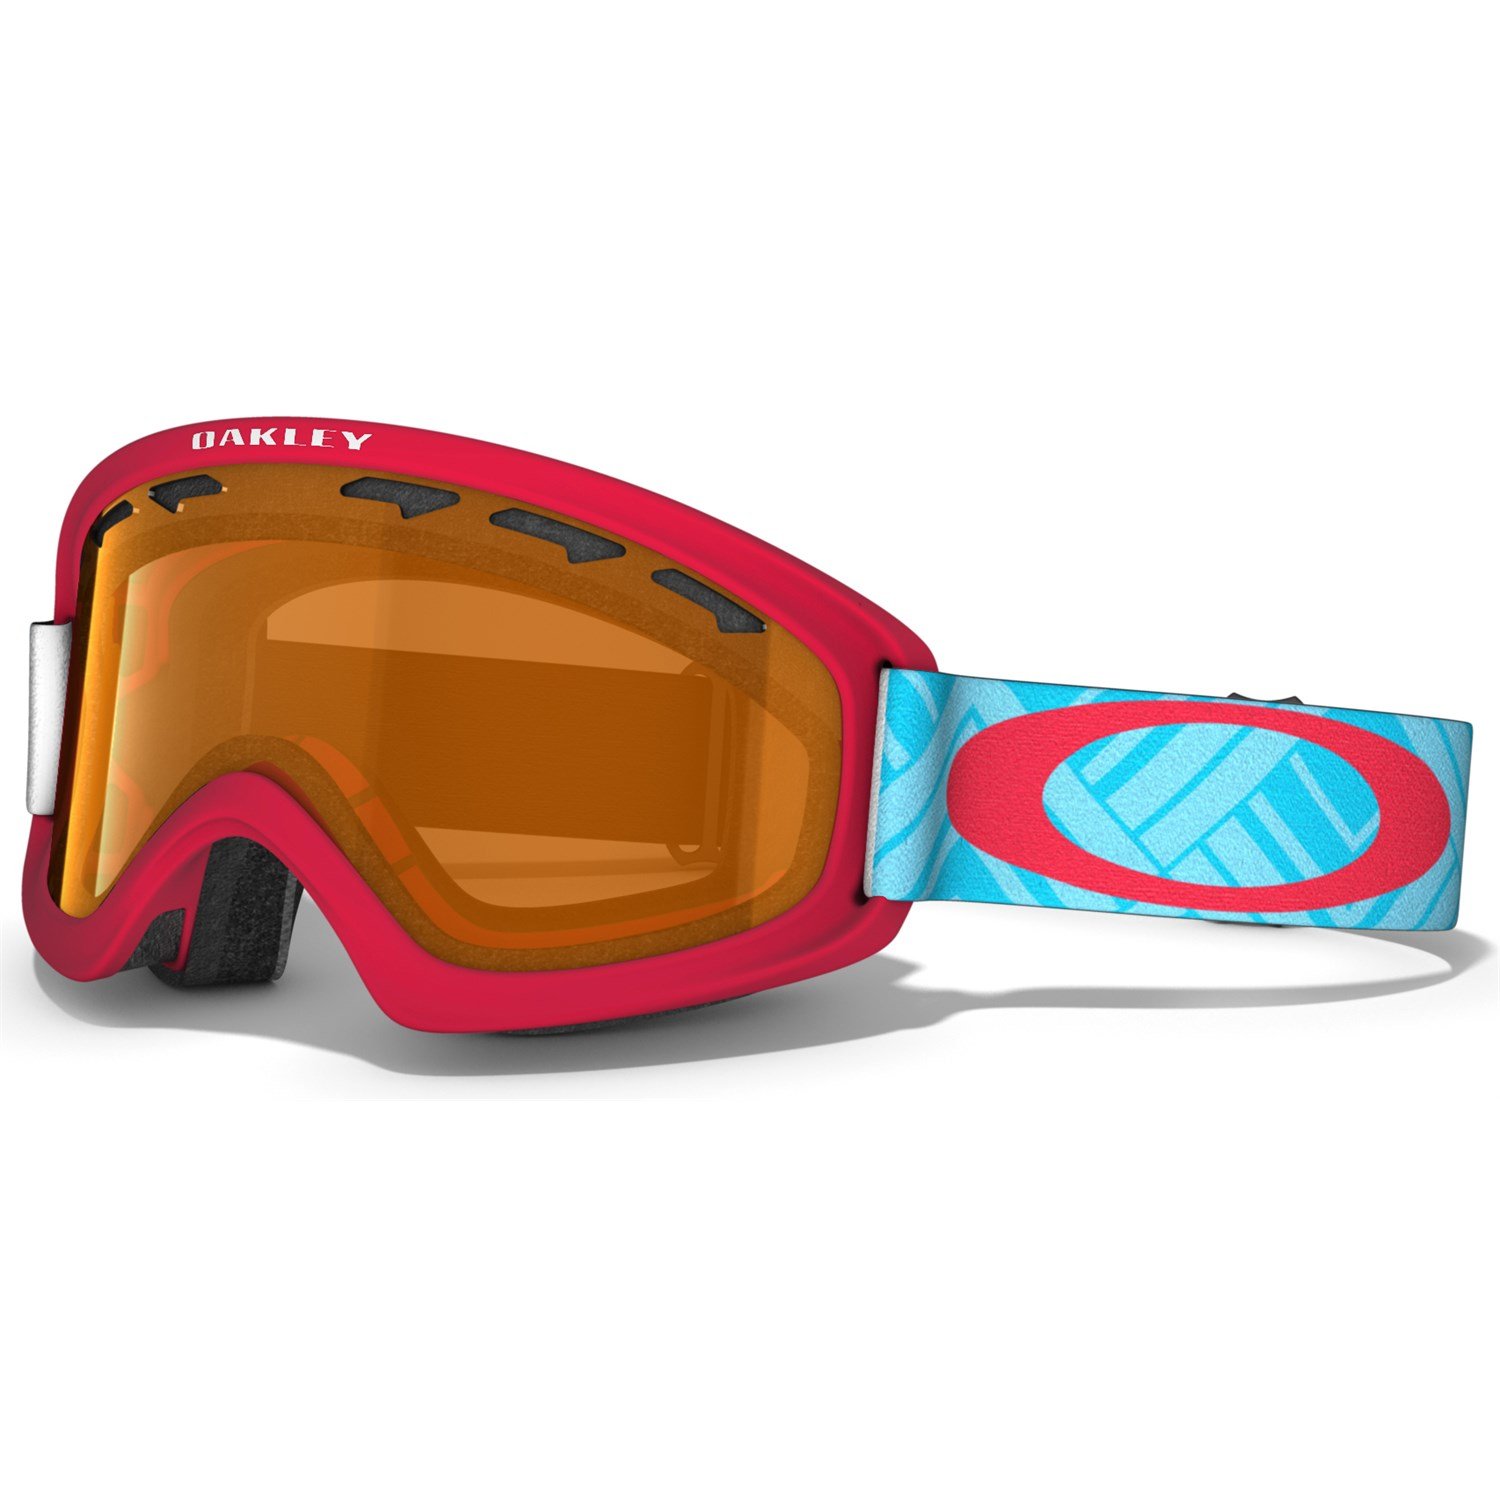 oakley kids ski goggles